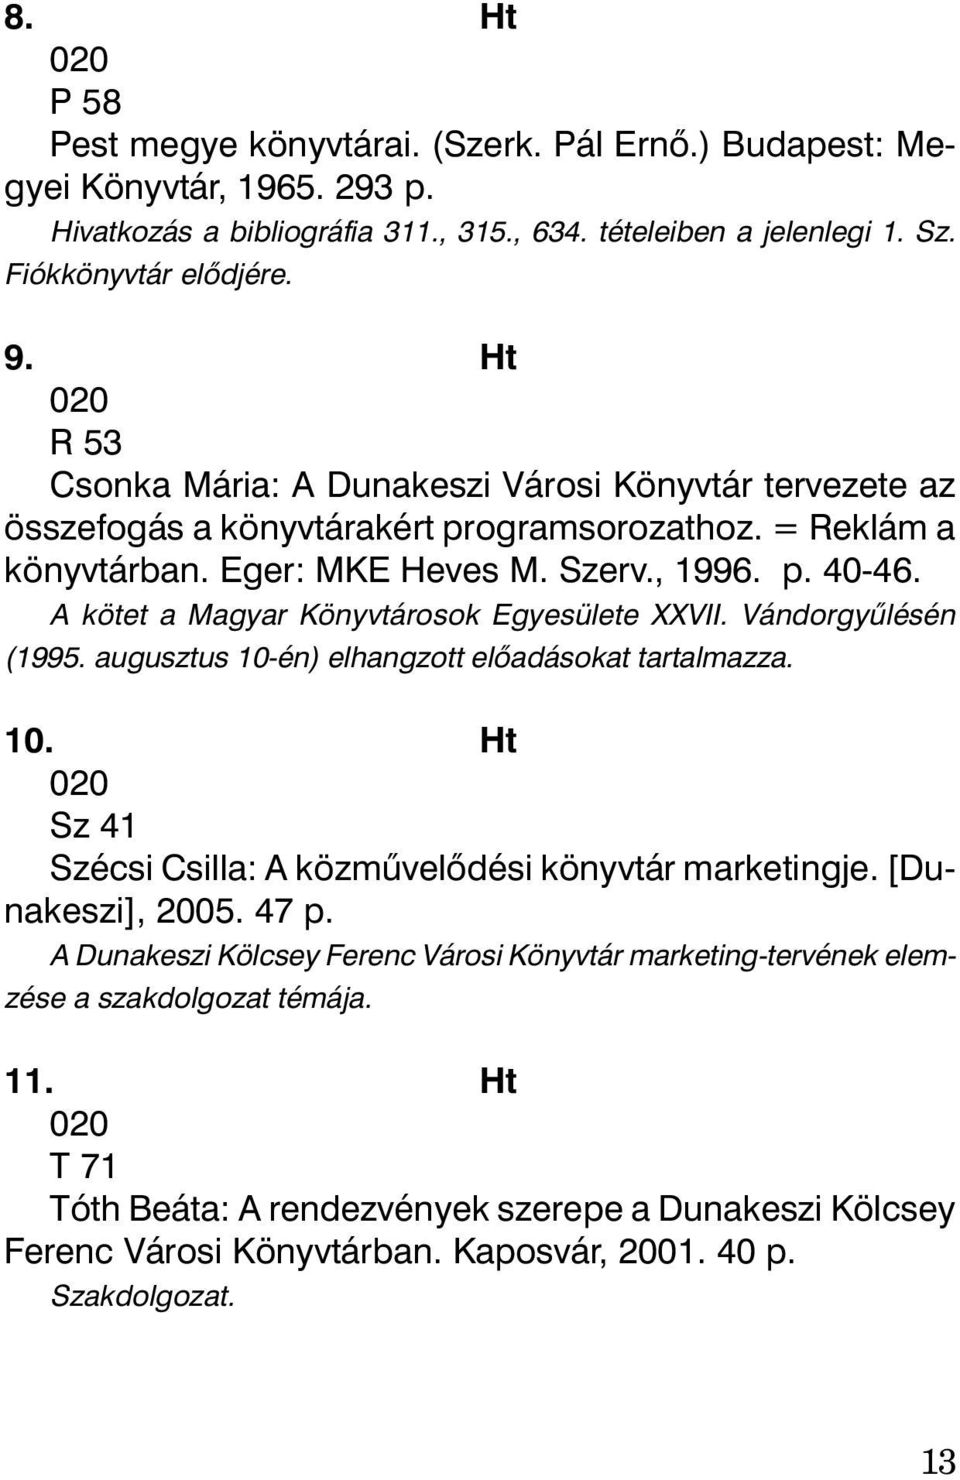 A kötet a Magyar Könyvtárosok Egyesülete XXVII. Vándorgyûlésén (1995. augusztus 10-én) elhangzott elõadásokat tartalmazza. 10. Ht 020 Sz 41 Szécsi Csilla: A közmûvelõdési könyvtár marketingje.